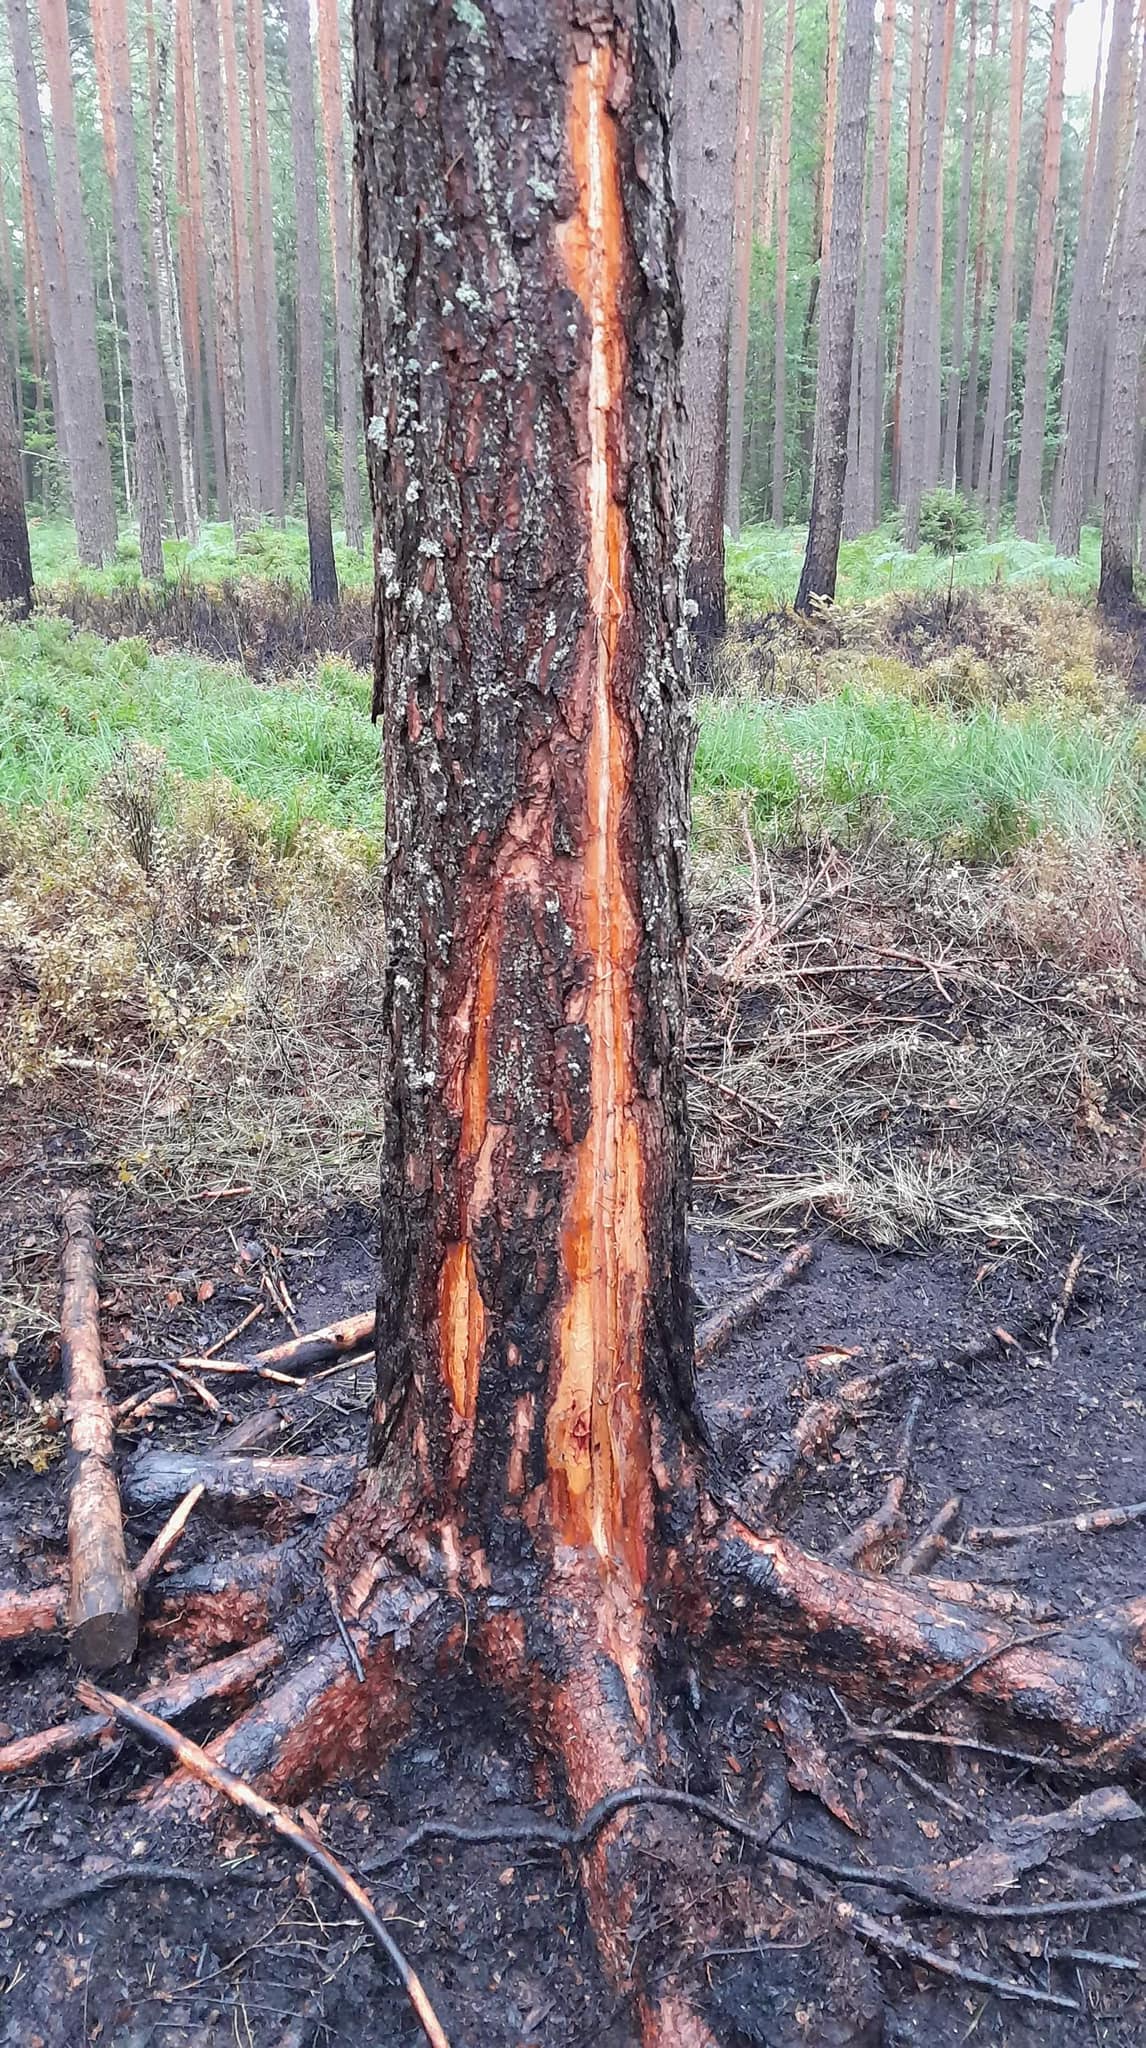 Piorun uderzył w drzewo, w lesie pojawił się pożar (zdjęcia)